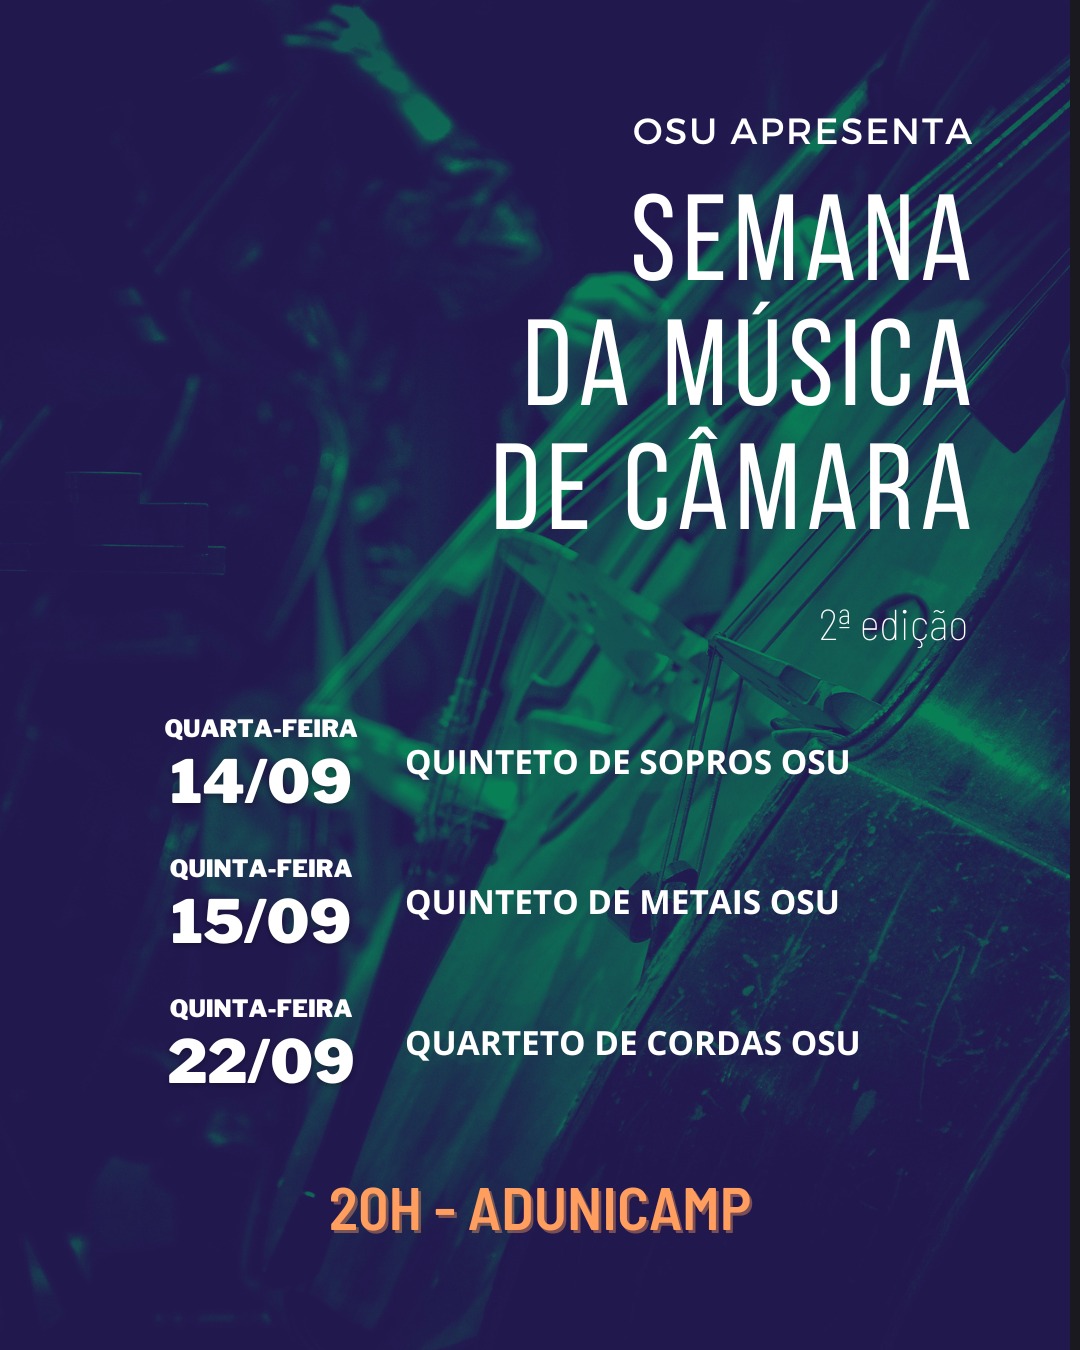 CARD ADUNICAMP — Orquestra Sinfônica da Unicamp realiza 2a. edição da “Semana da Música de Câmara” — ADunicamp